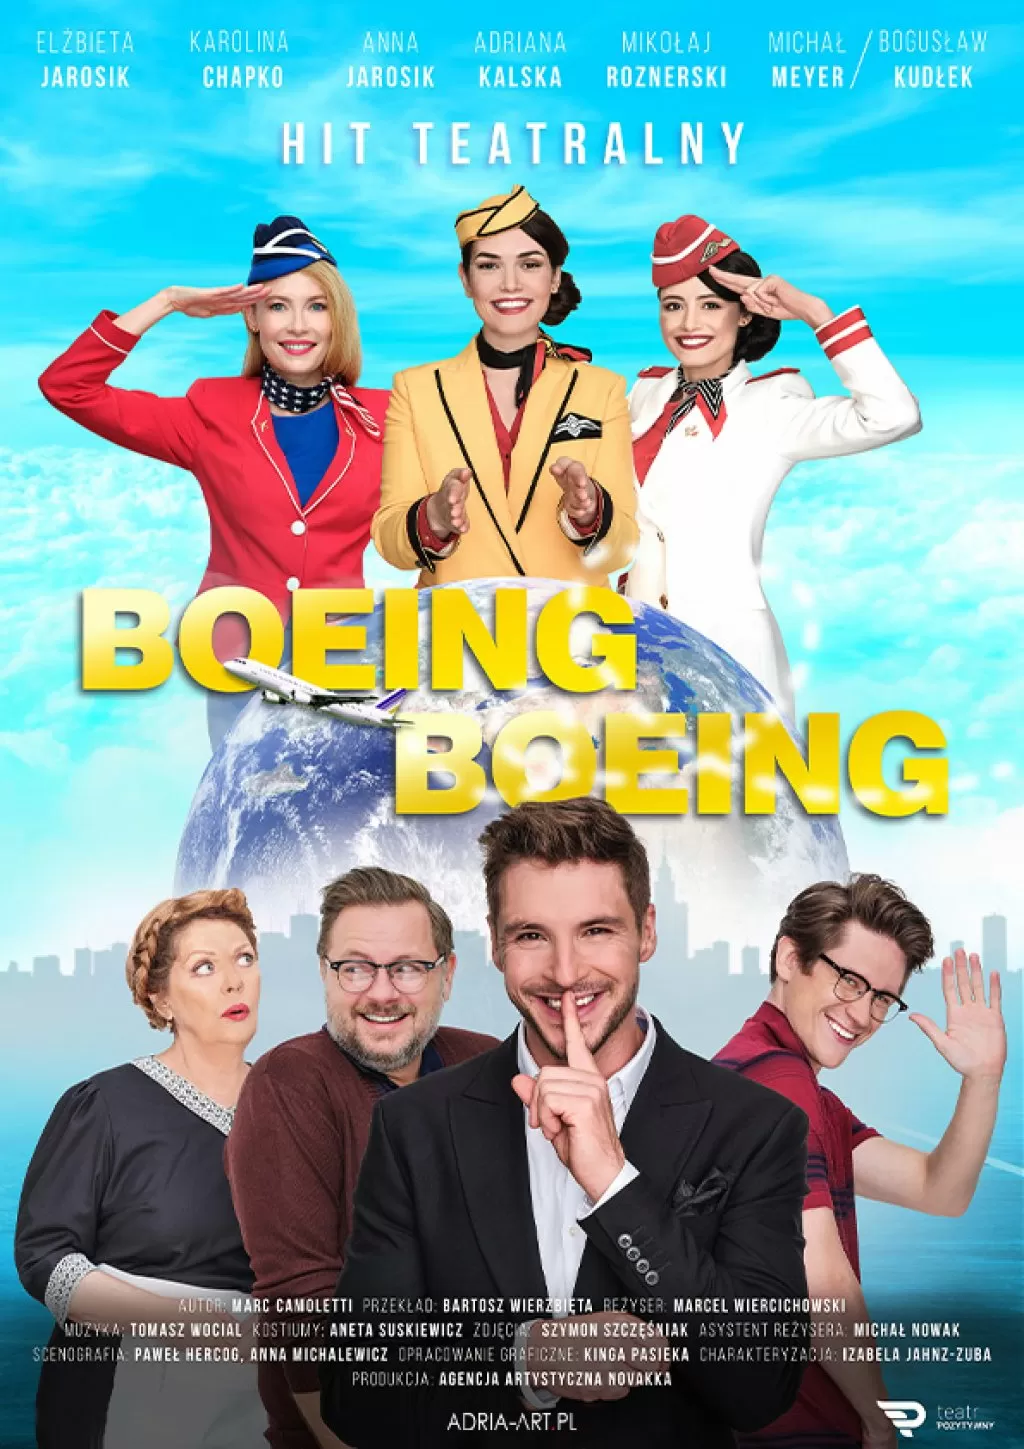 Spektakl "Boeing Boeing" odlotowa komedia z udziałem gwiazd